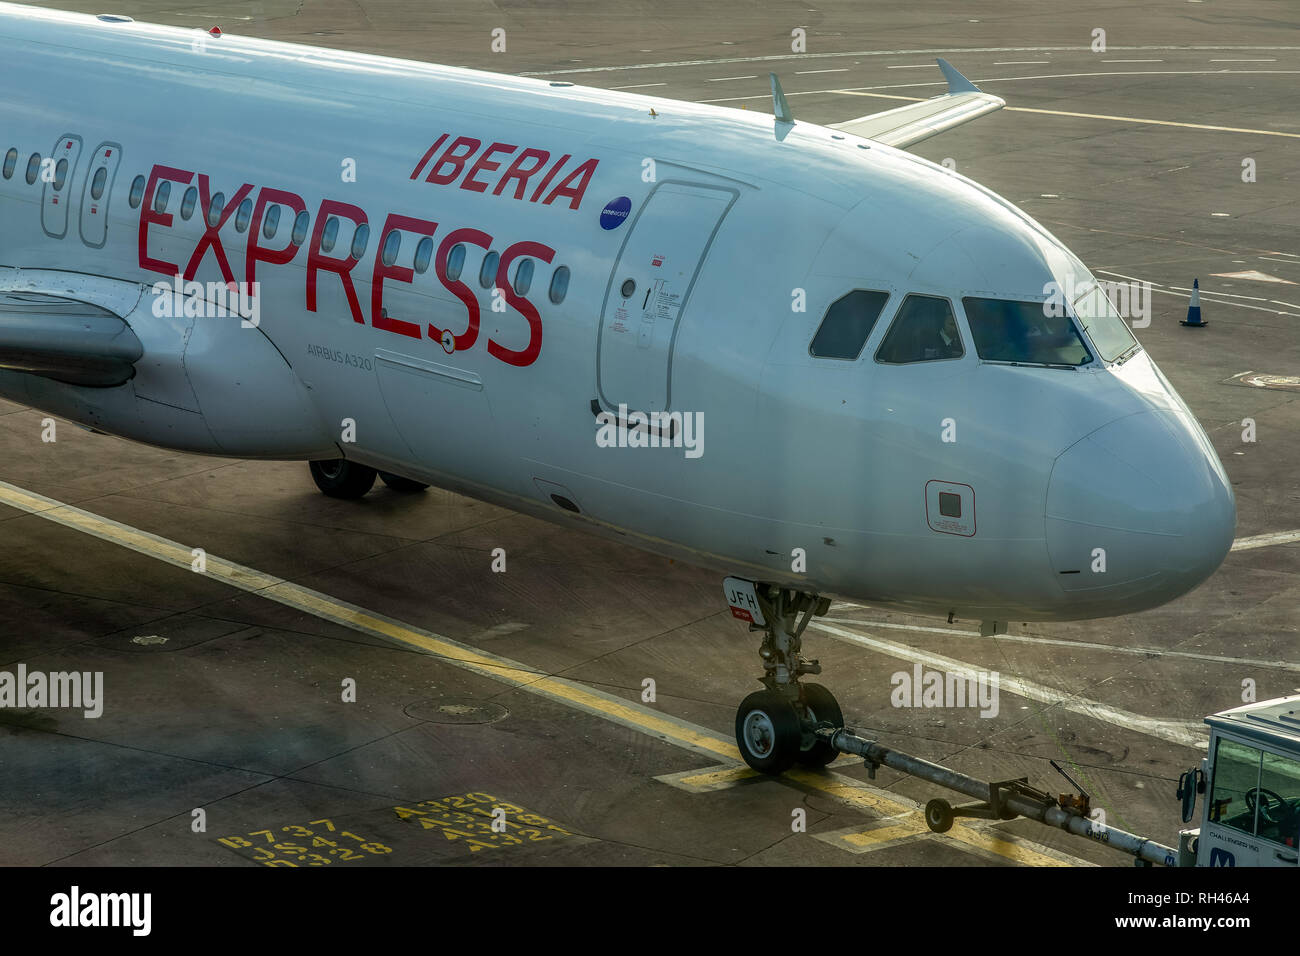 Un Iberia Express Airbus A320, registrati come CE-JFH, all'Aeroporto di Manchester in Inghilterra. Foto Stock